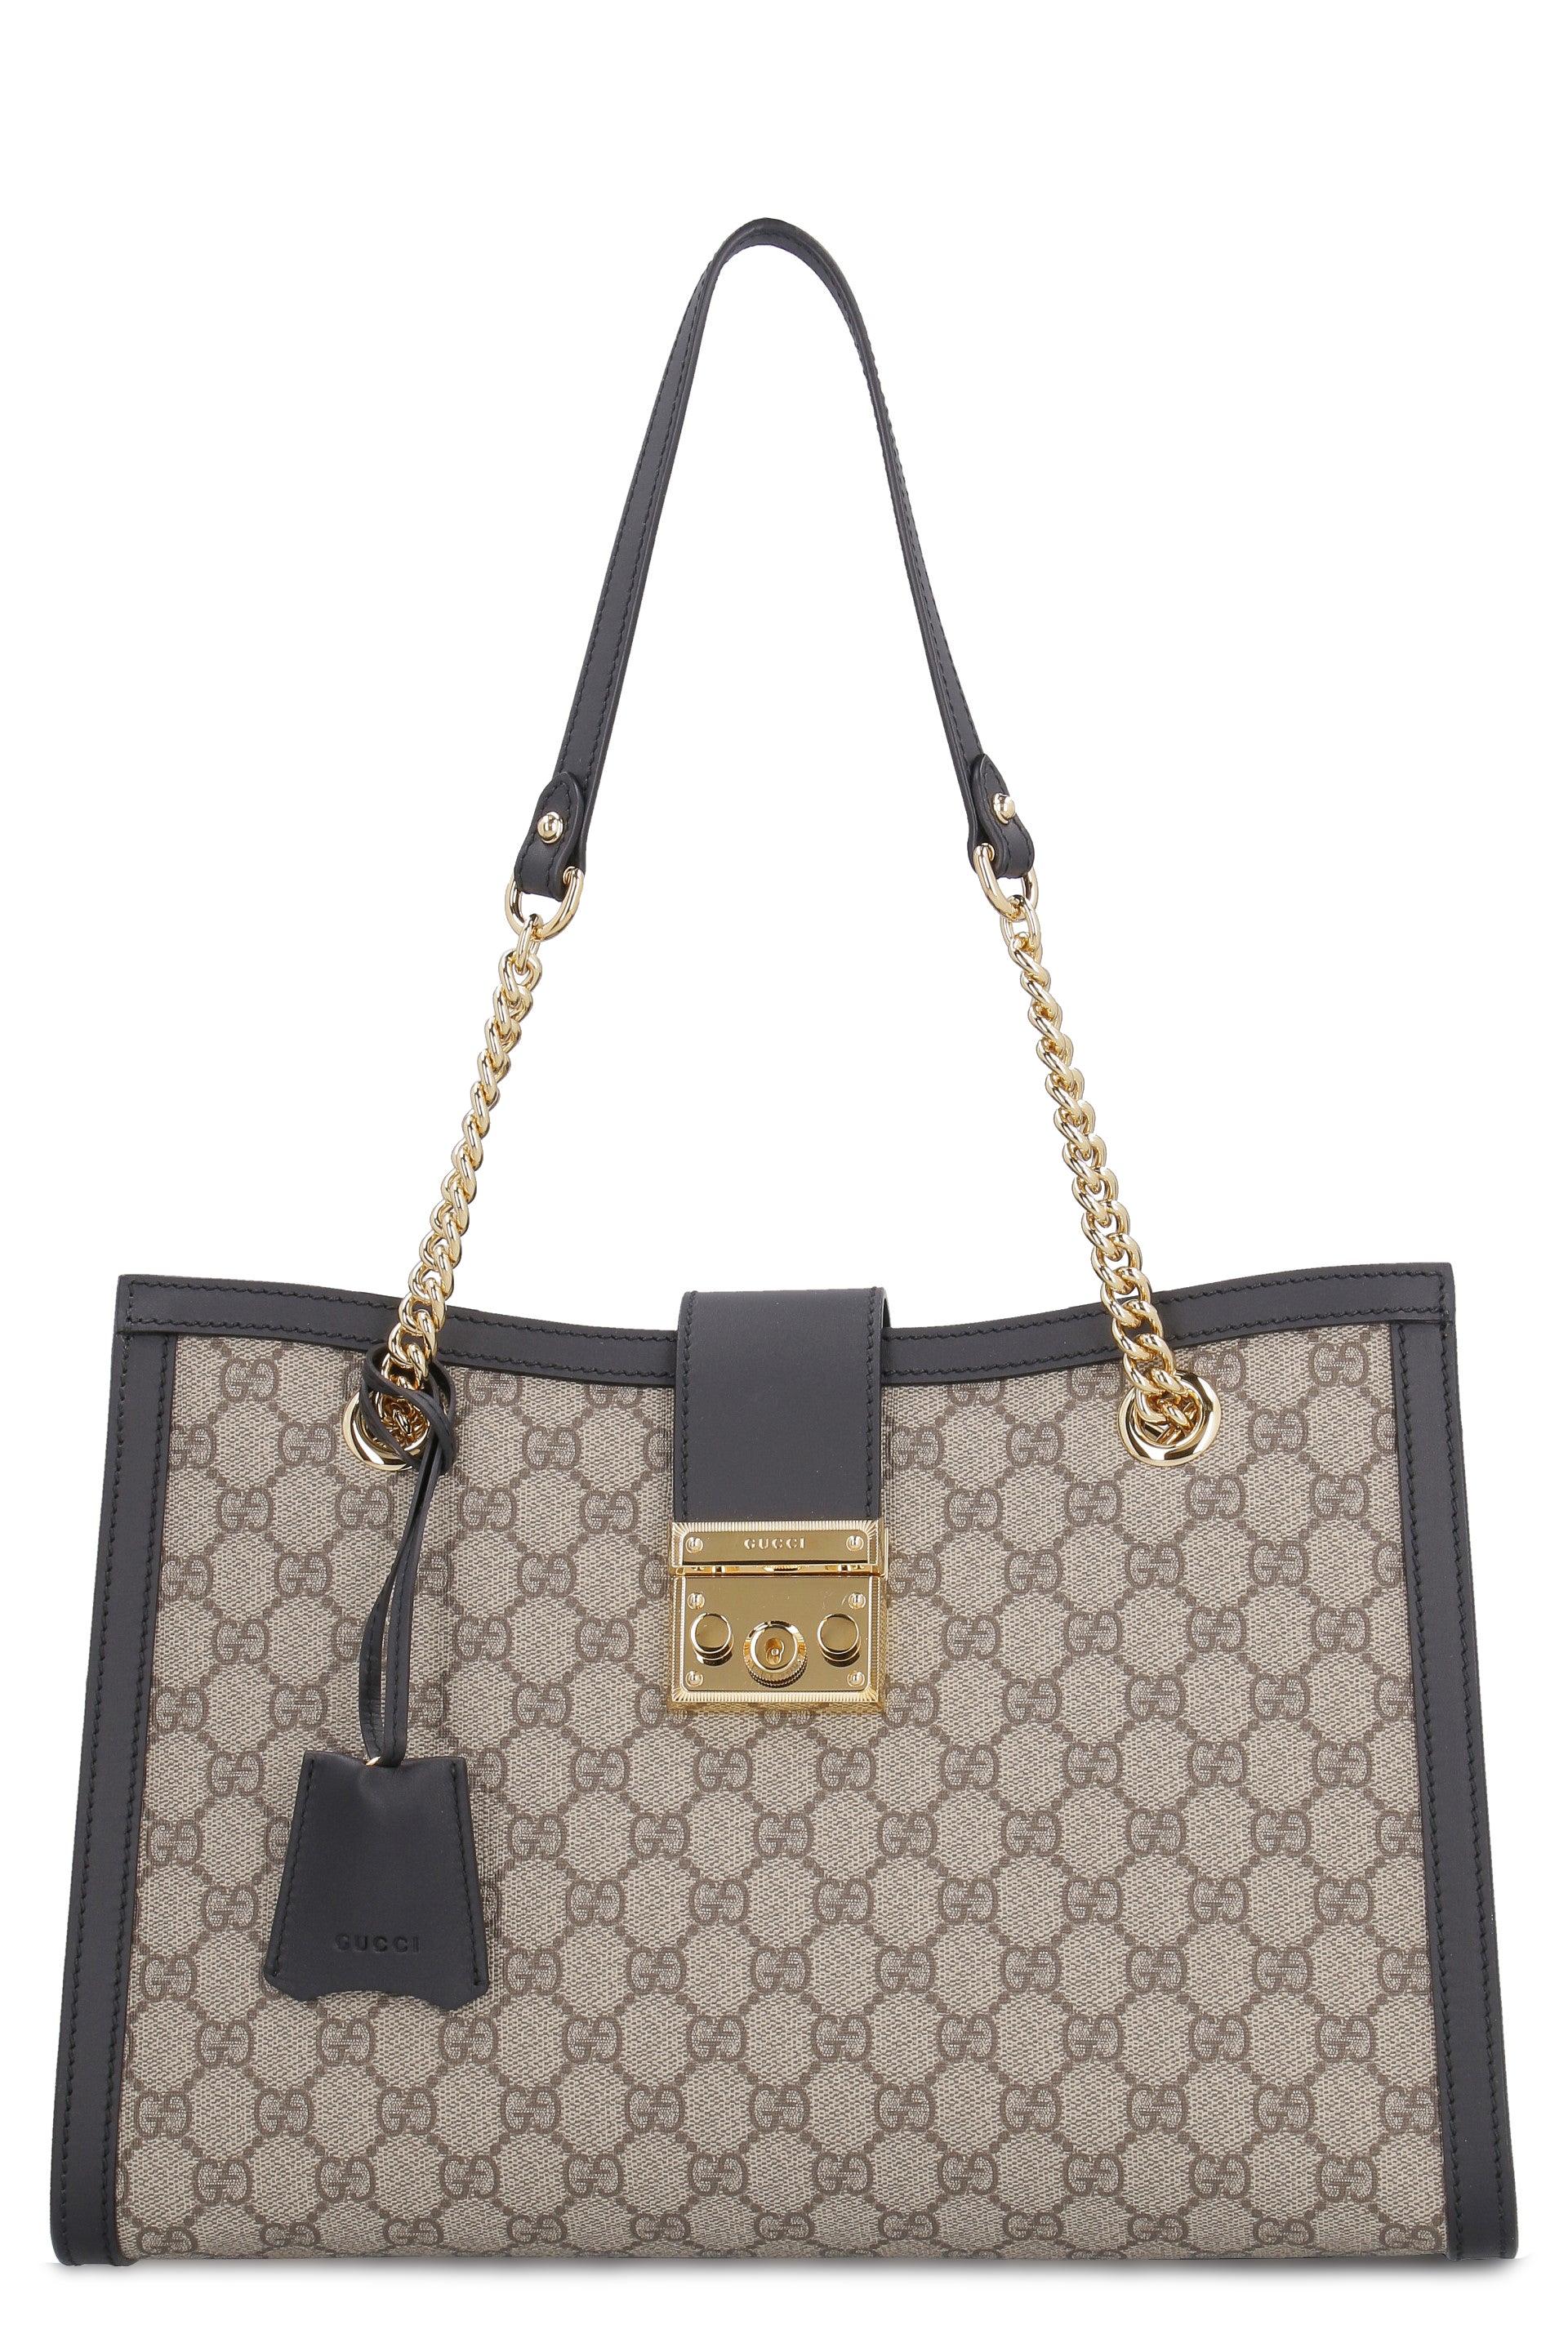 Gucci GG Supreme Push-Lock Small Cross-body Bag